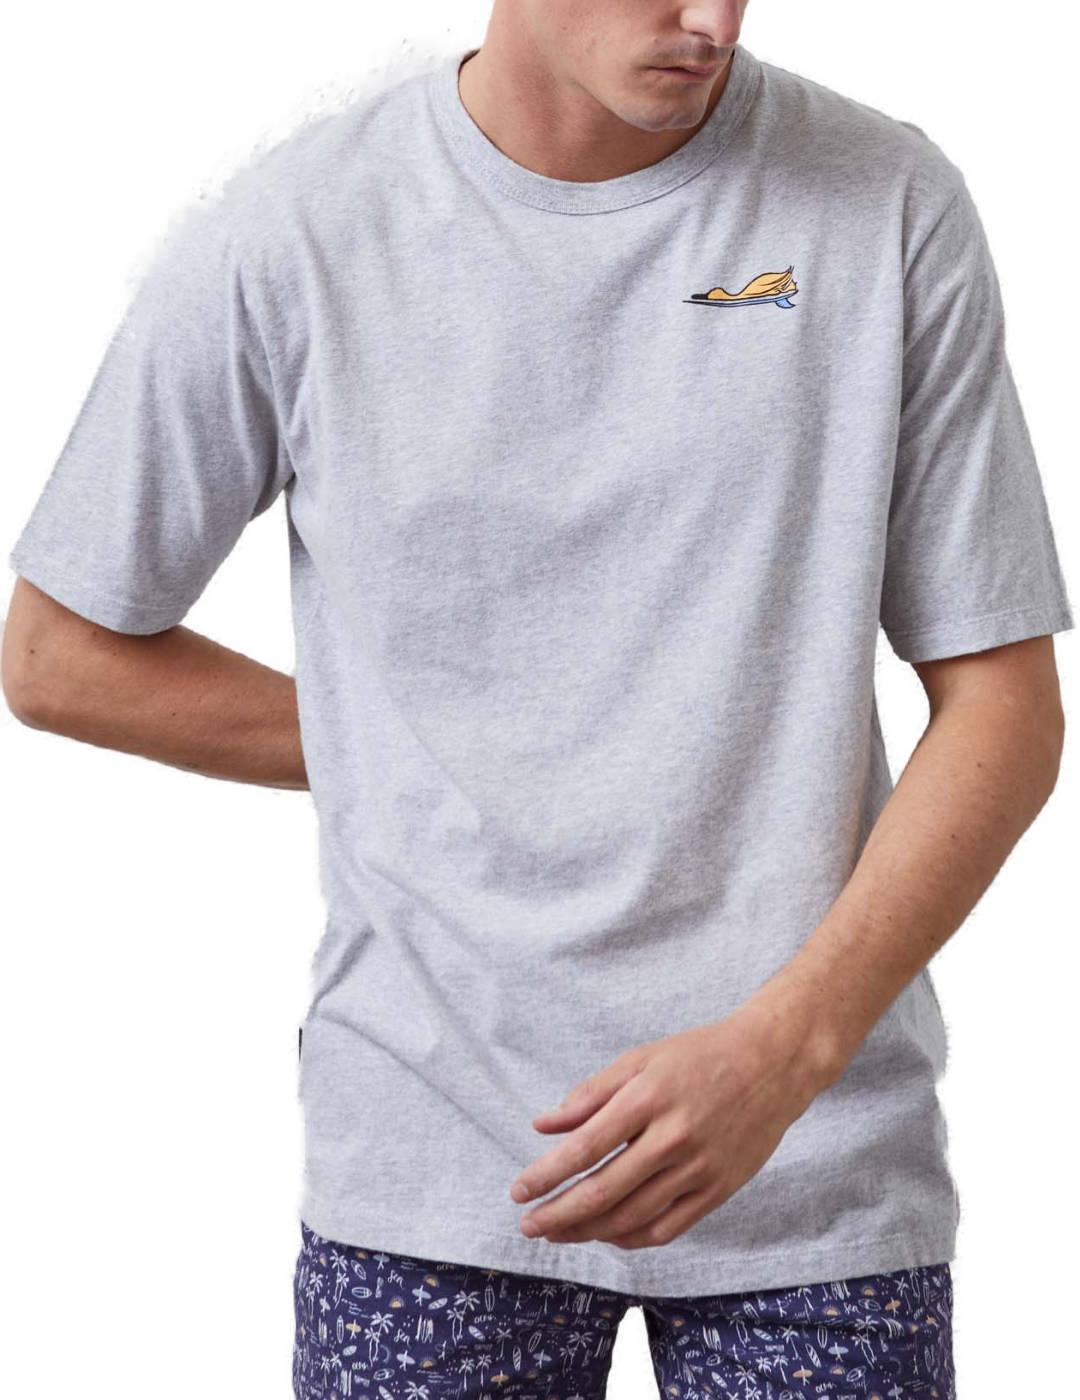 Camiseta Altonadock gris dibujo pato manga corta para hombre